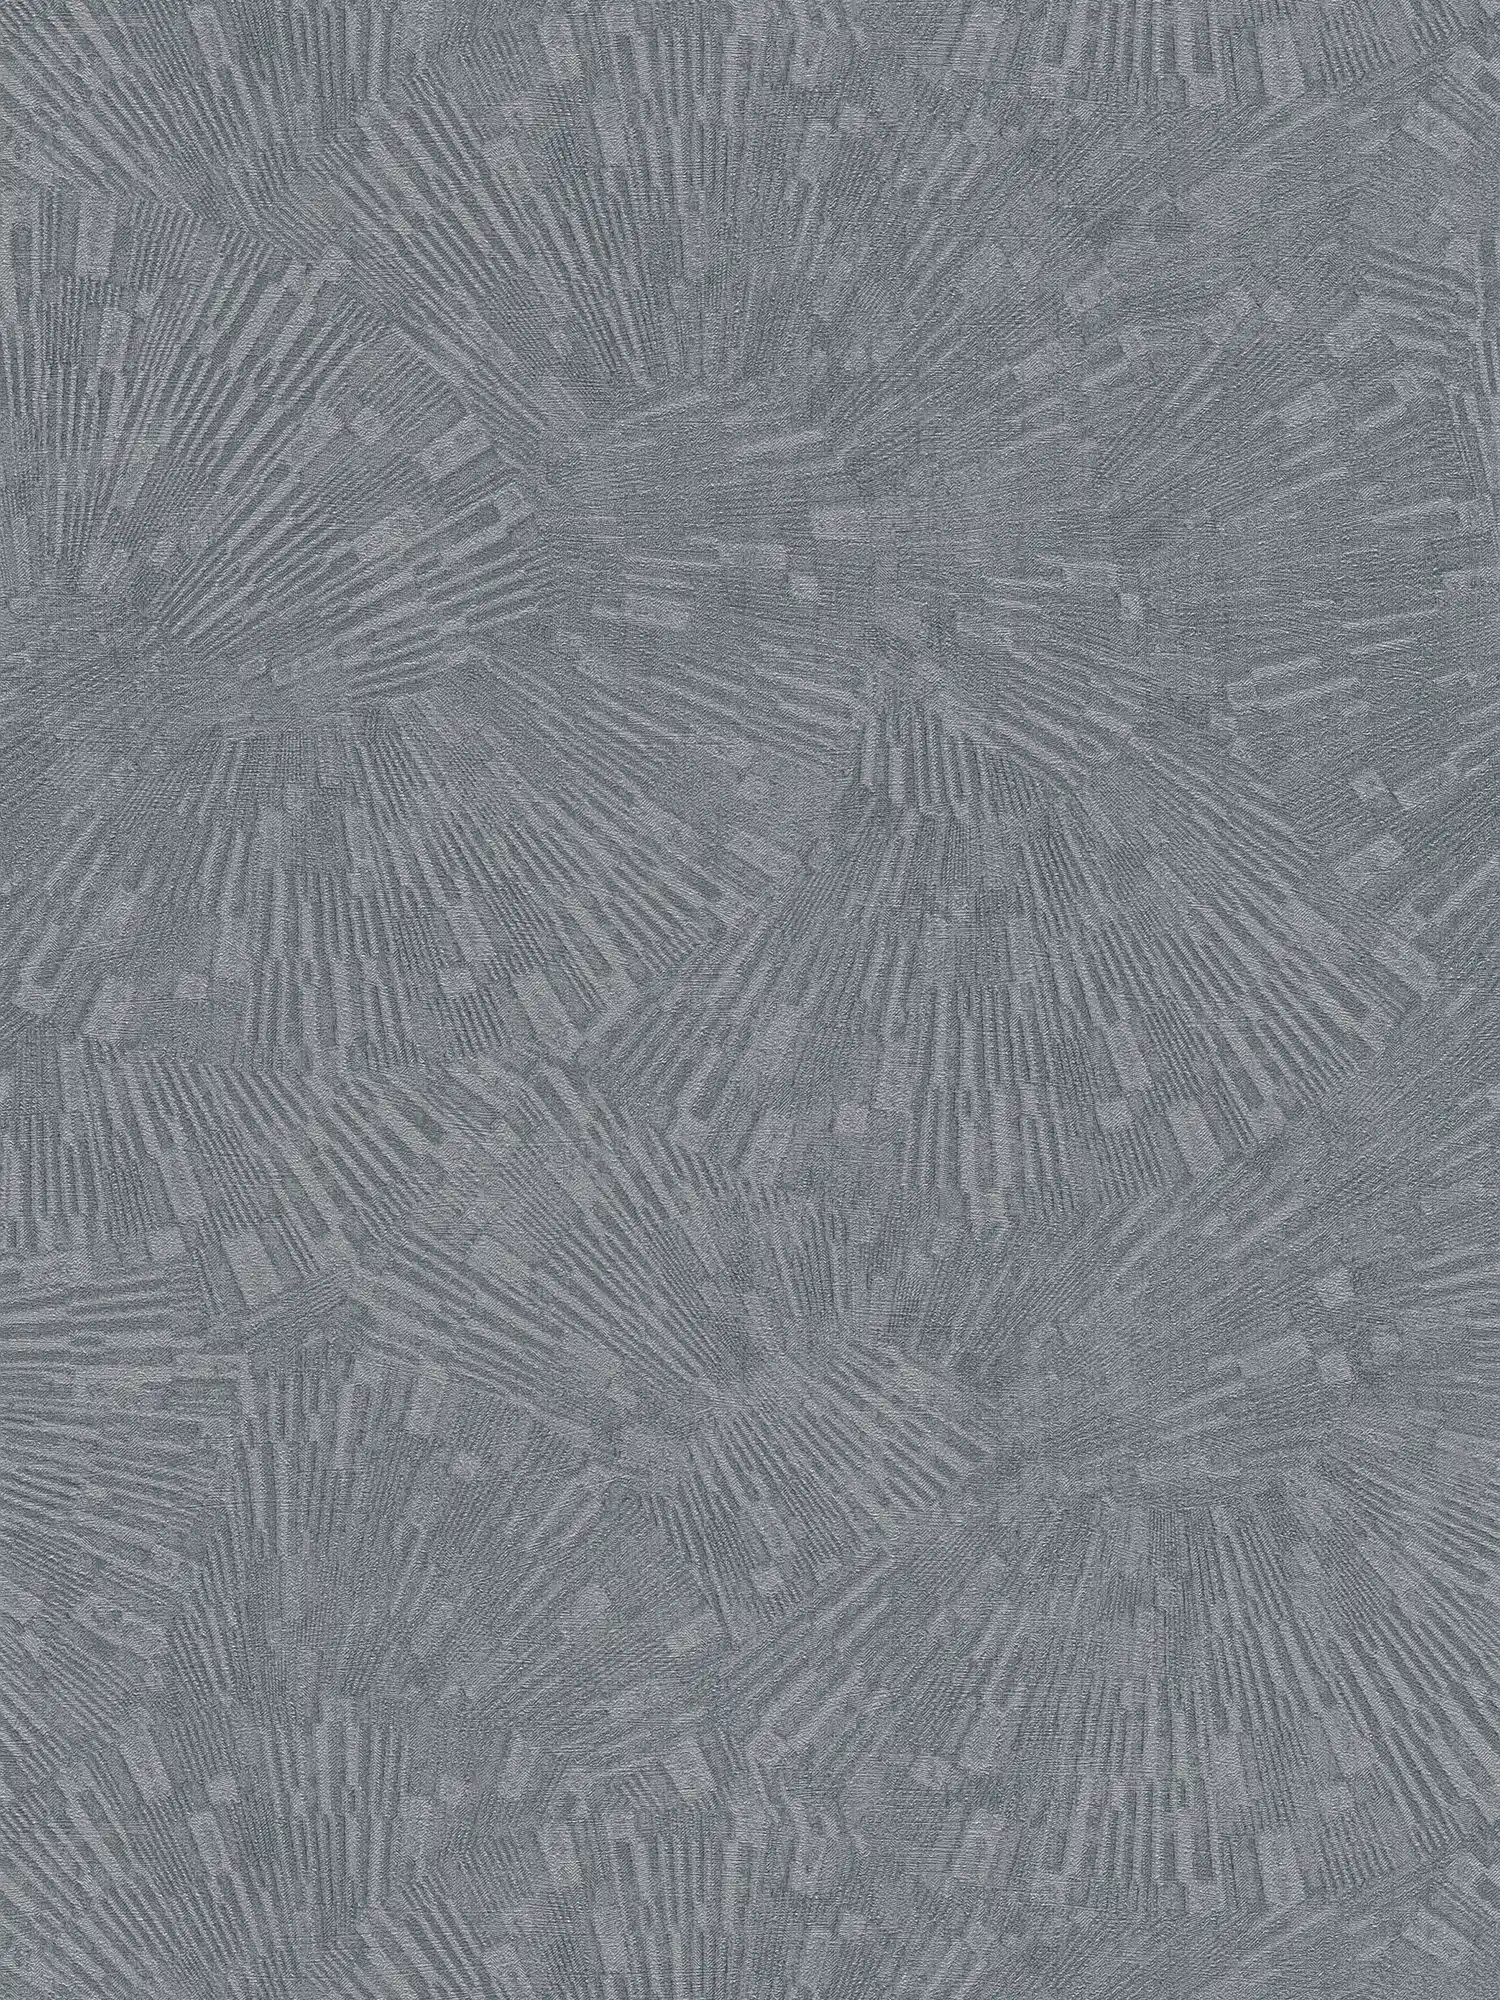 Vliesbehang met grafisch patroon in retrostijl - grijs
